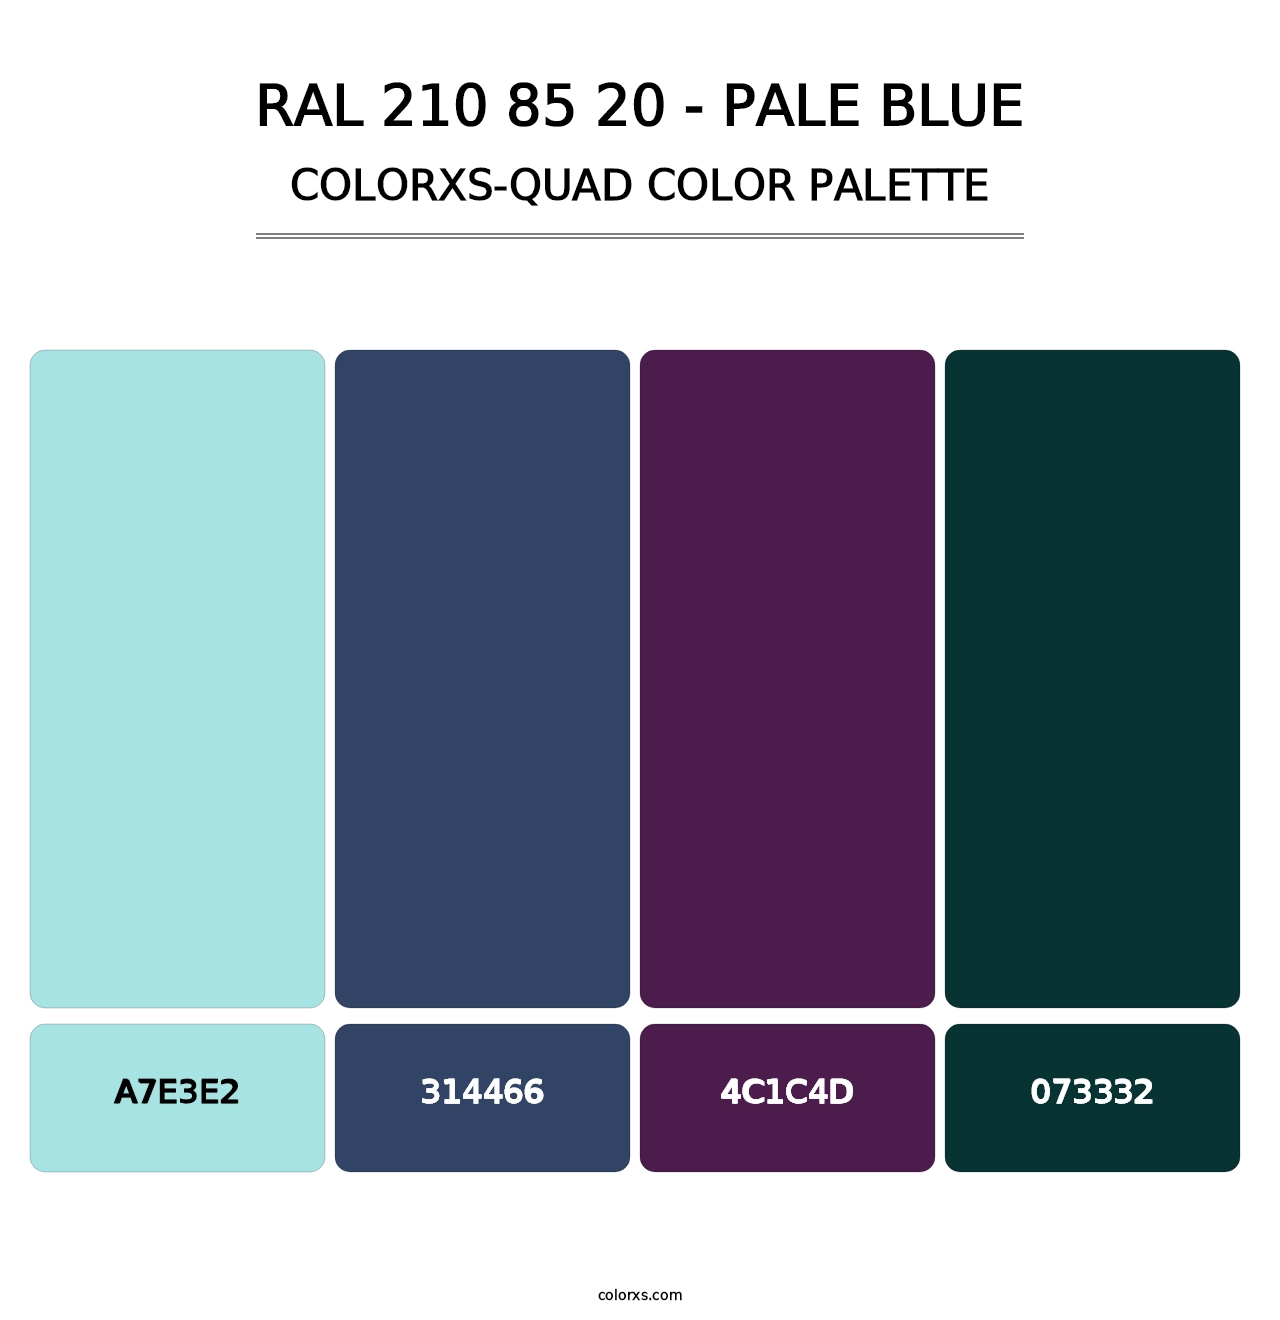 RAL 210 85 20 - Pale Blue - Colorxs Quad Palette